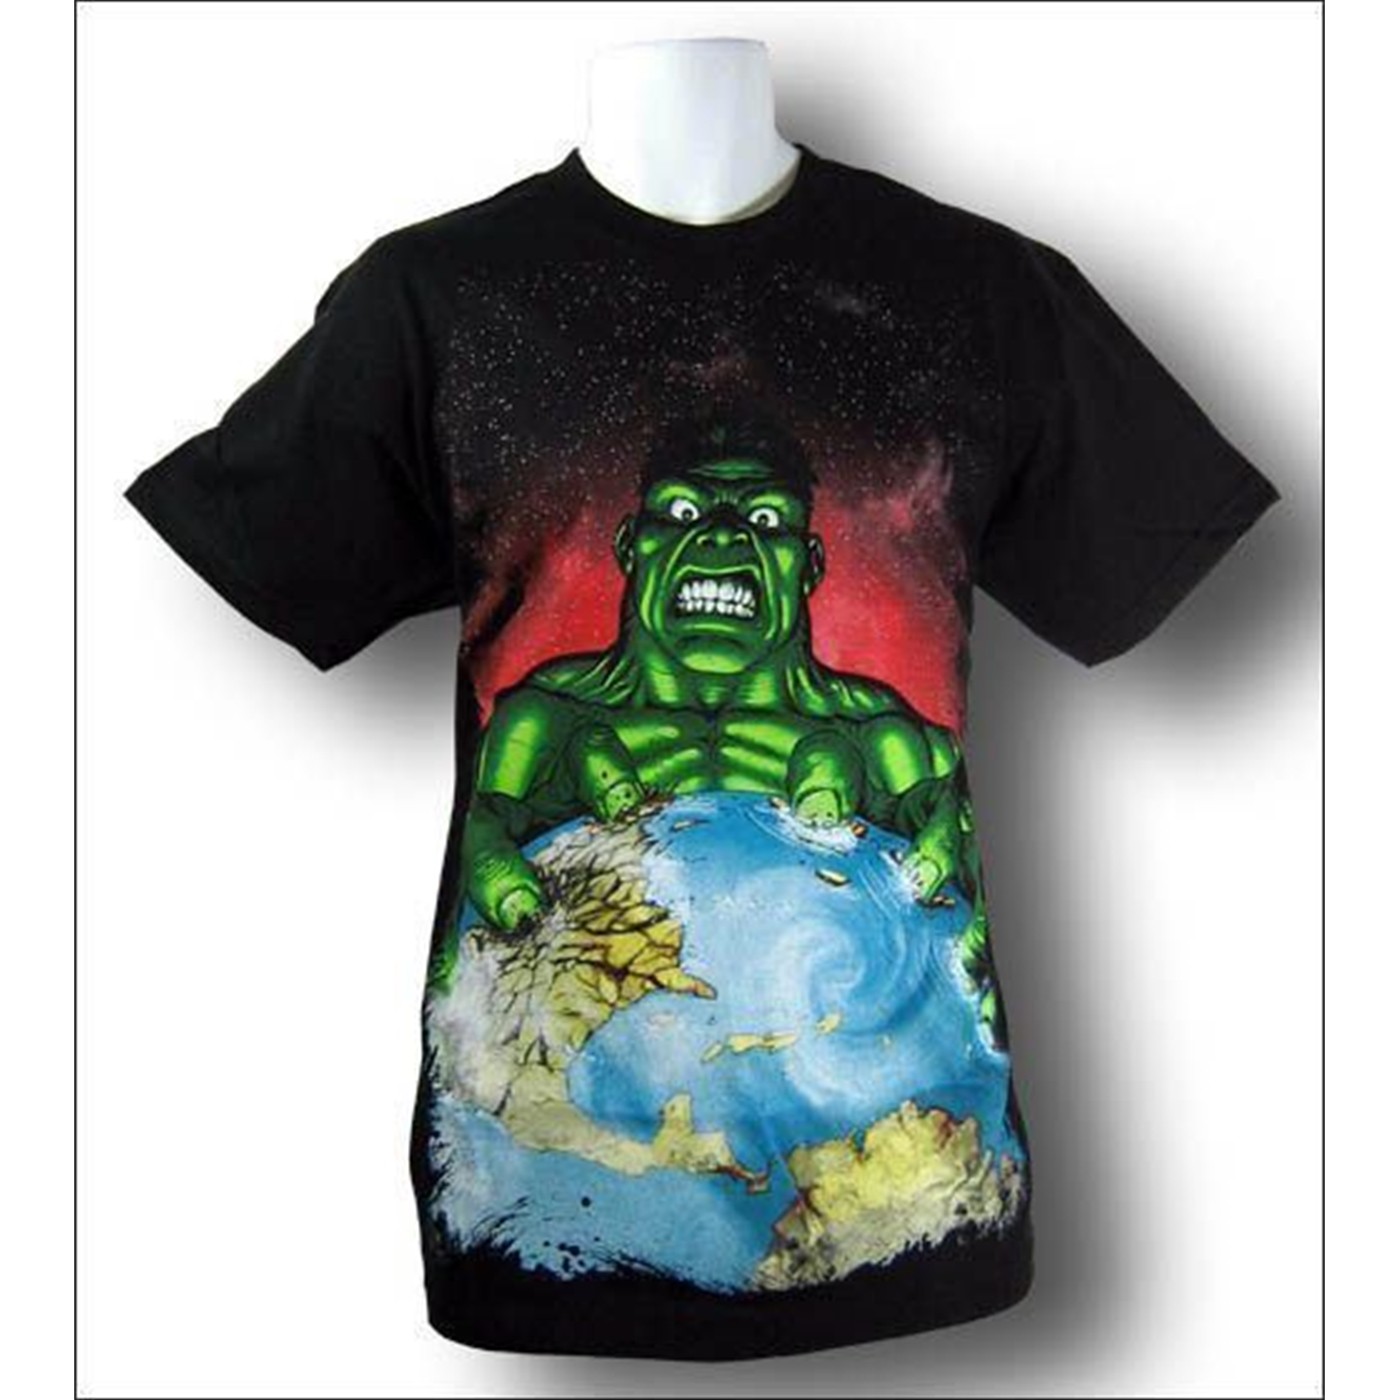 The Hulk T-Shirt Planet Hulk!